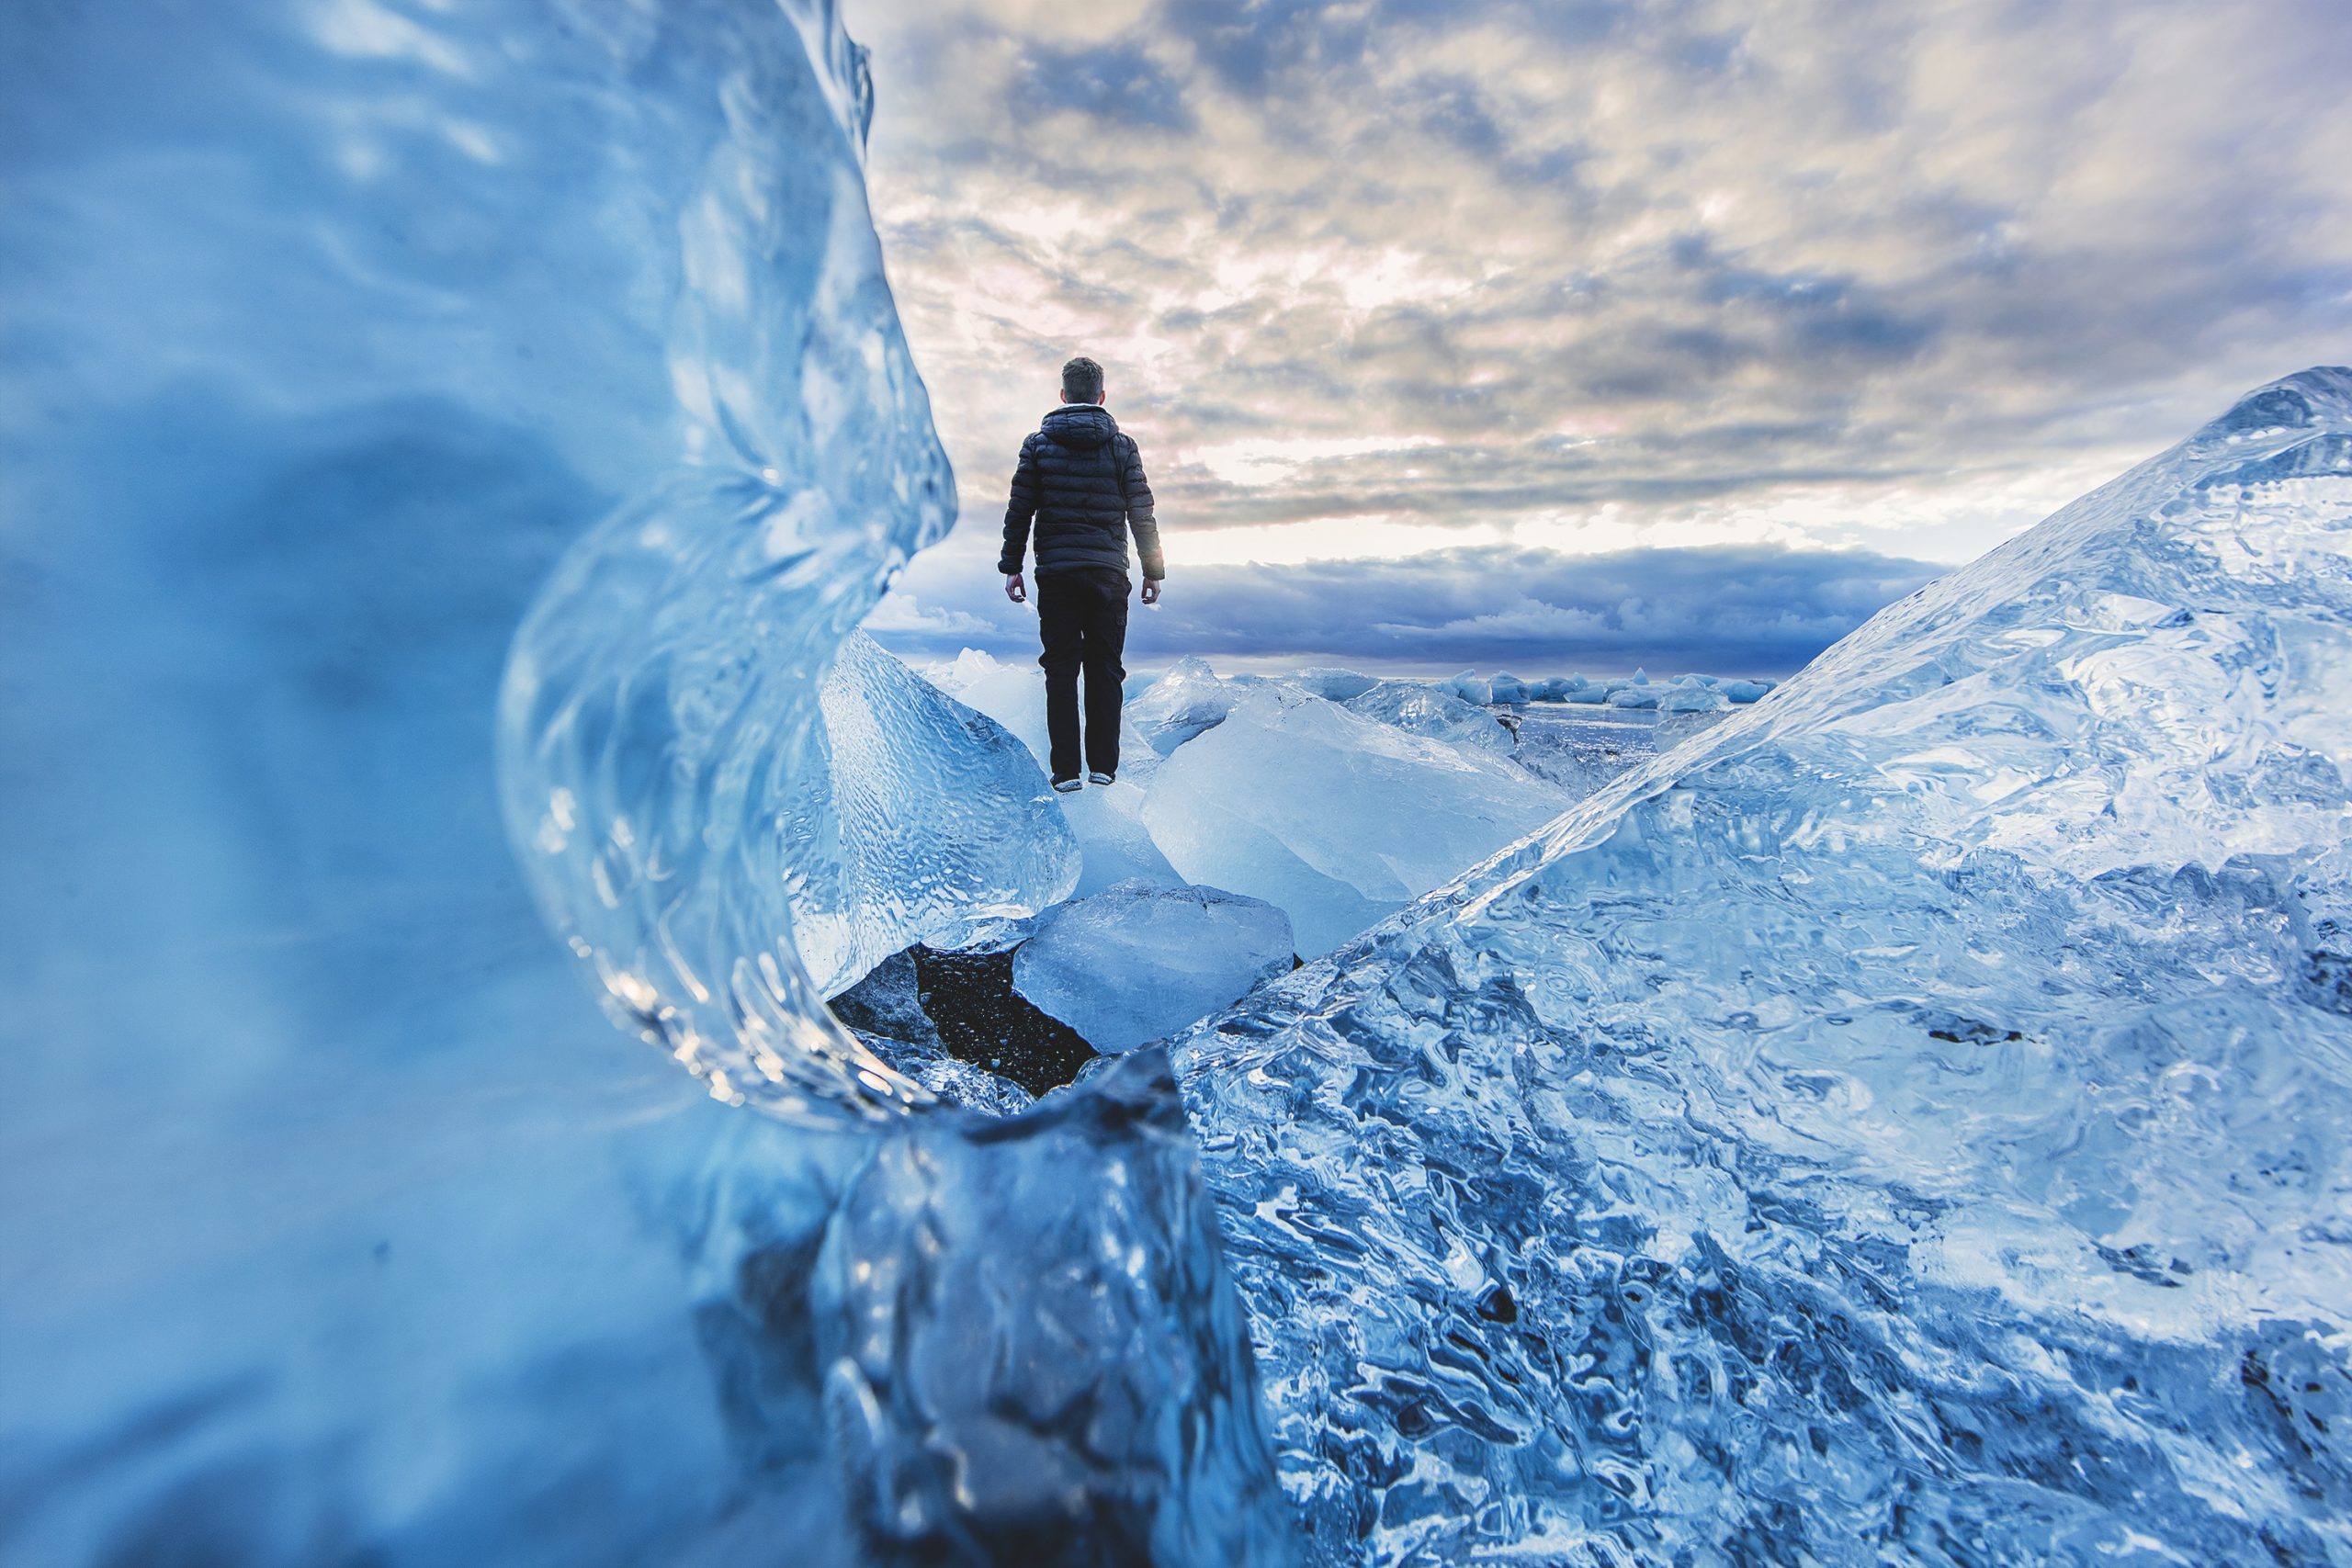 Prachtige ijssculpturen in Antarctica